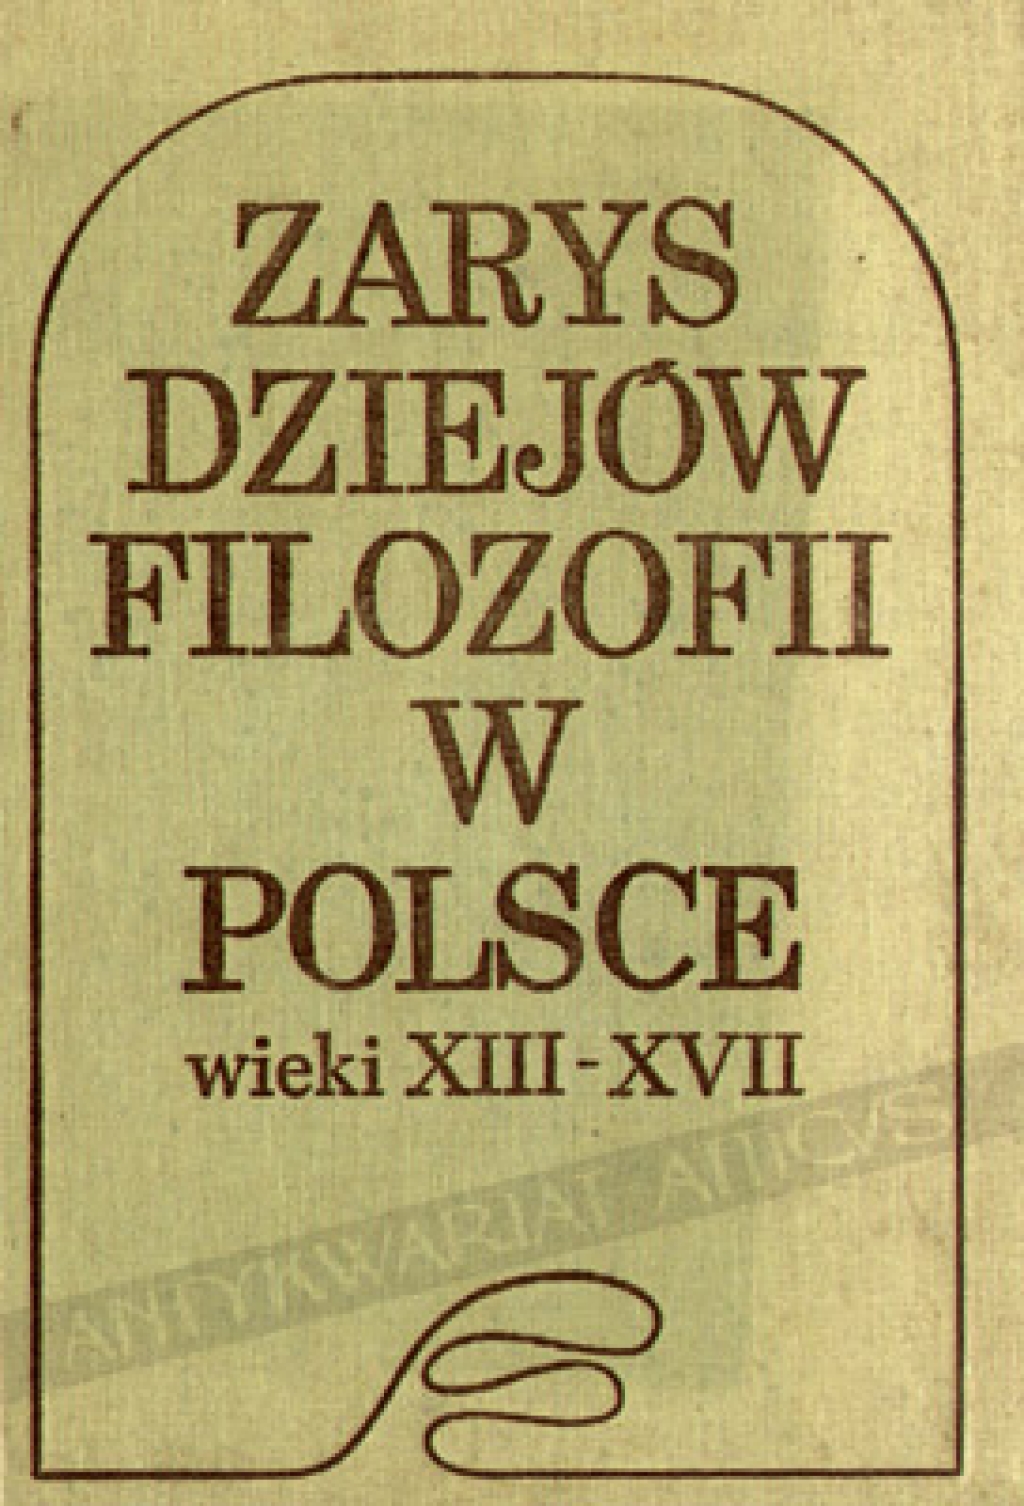 Zarys dziejów filozofii w Polsce. Wieki XIII-XVII